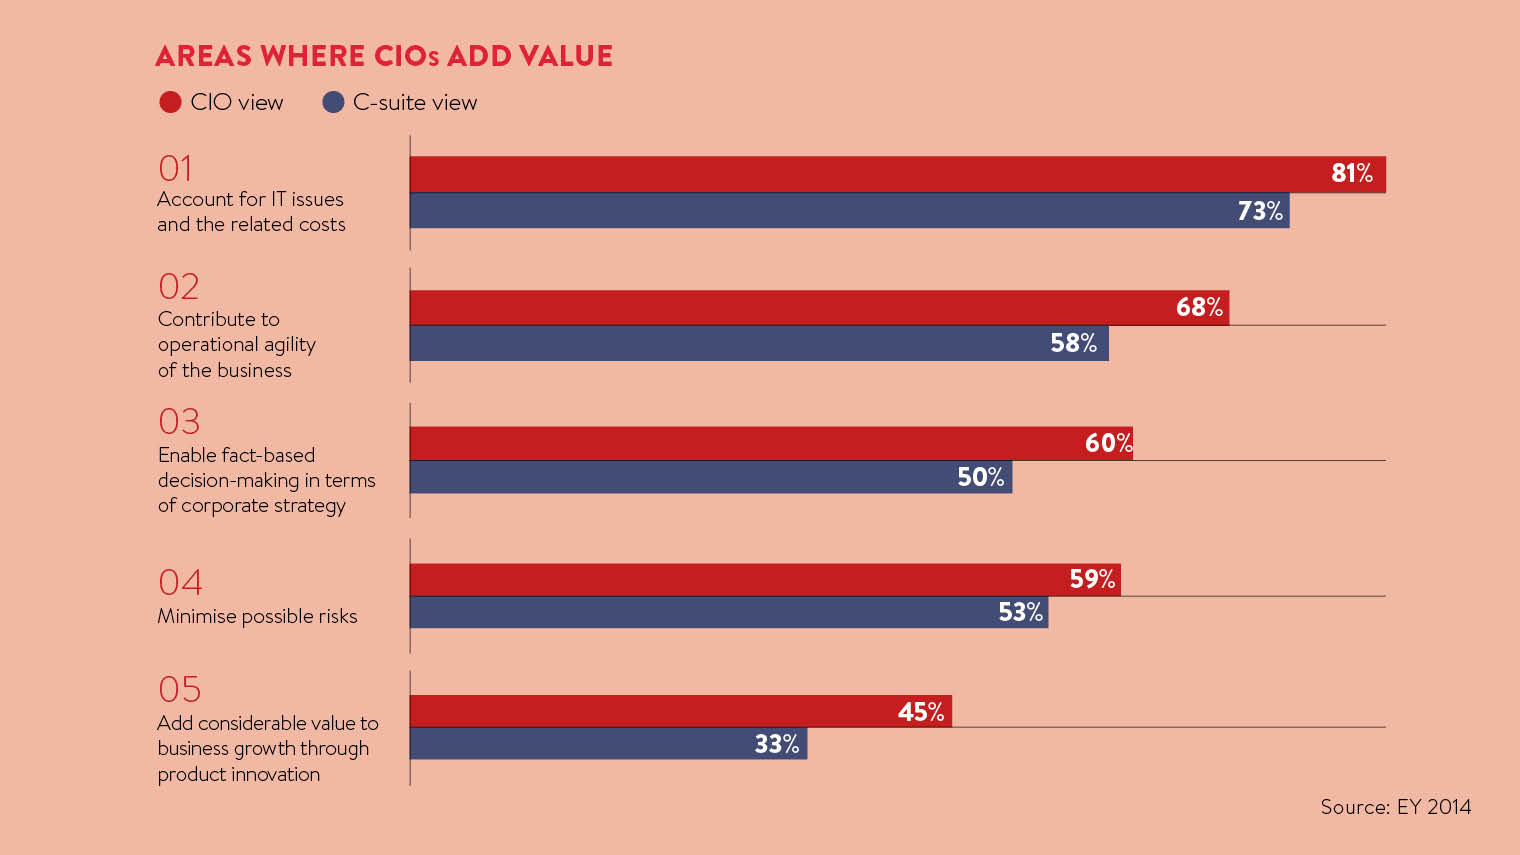 Areas where CIOs add value